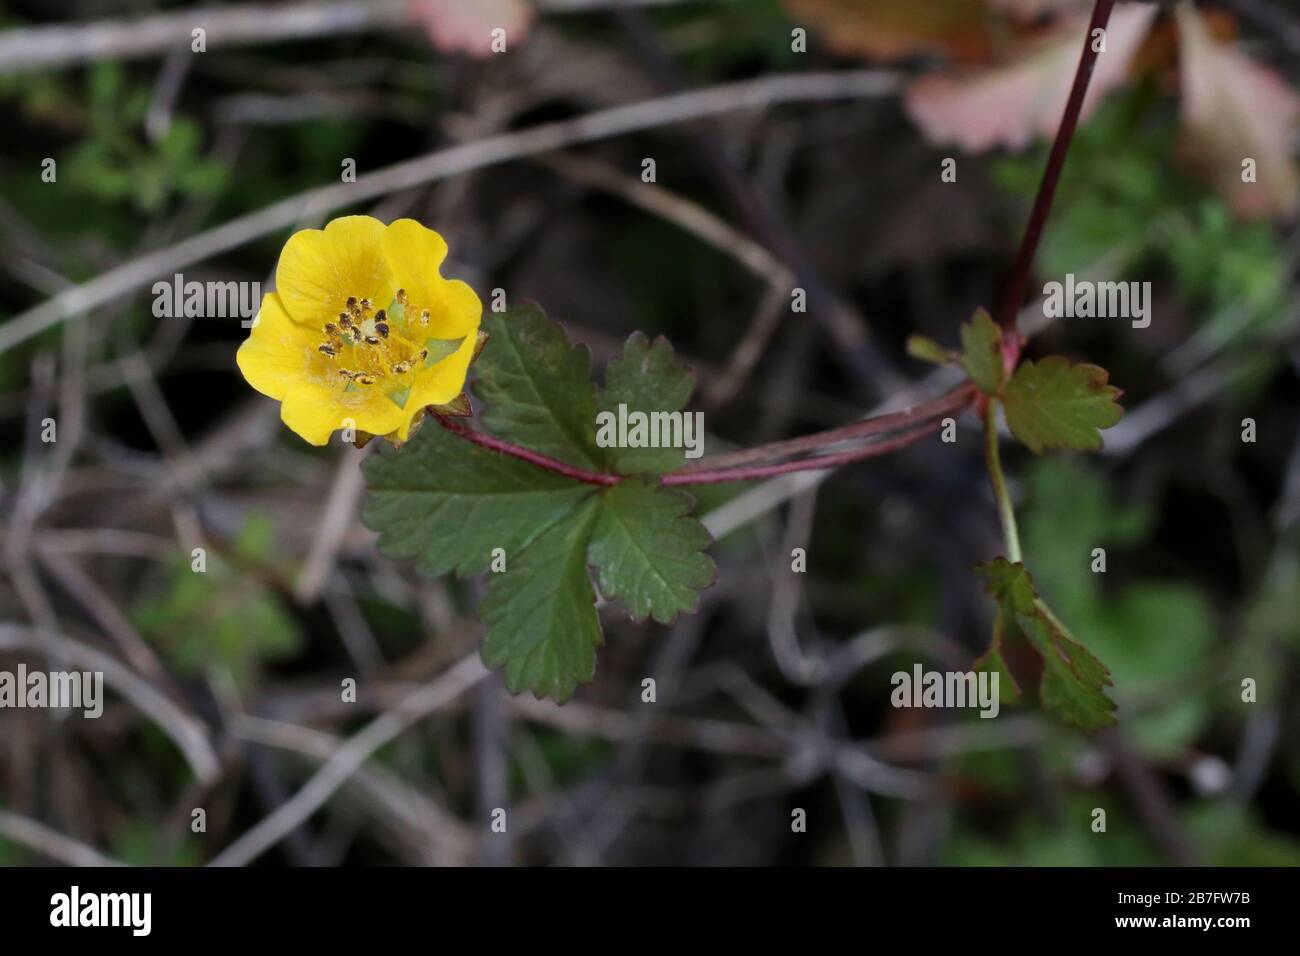 Potentilla wehrt sich, schleichender Cinquefoil - Wilde Pflanzen schossen  im Herbst. Herbst Stockfotografie - Alamy